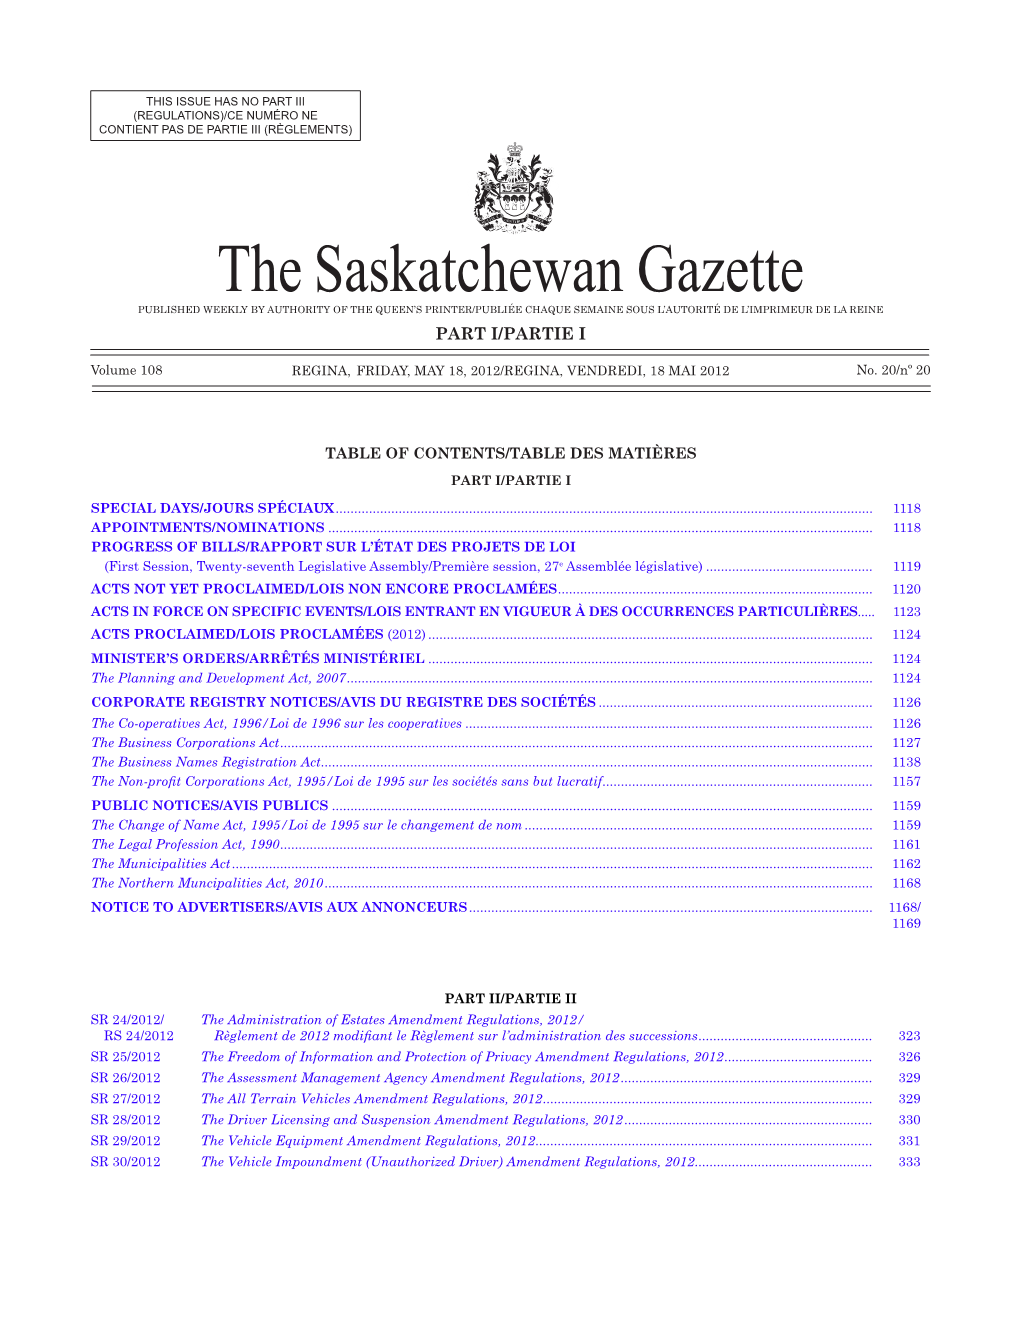 THE SASKATCHEWAN GAZETTE, May 18, 2012 1117 (REGULATIONS)/CE NUMÉRO NE CONTIENT PAS DE PARTIE III (RÈGLEMENTS)